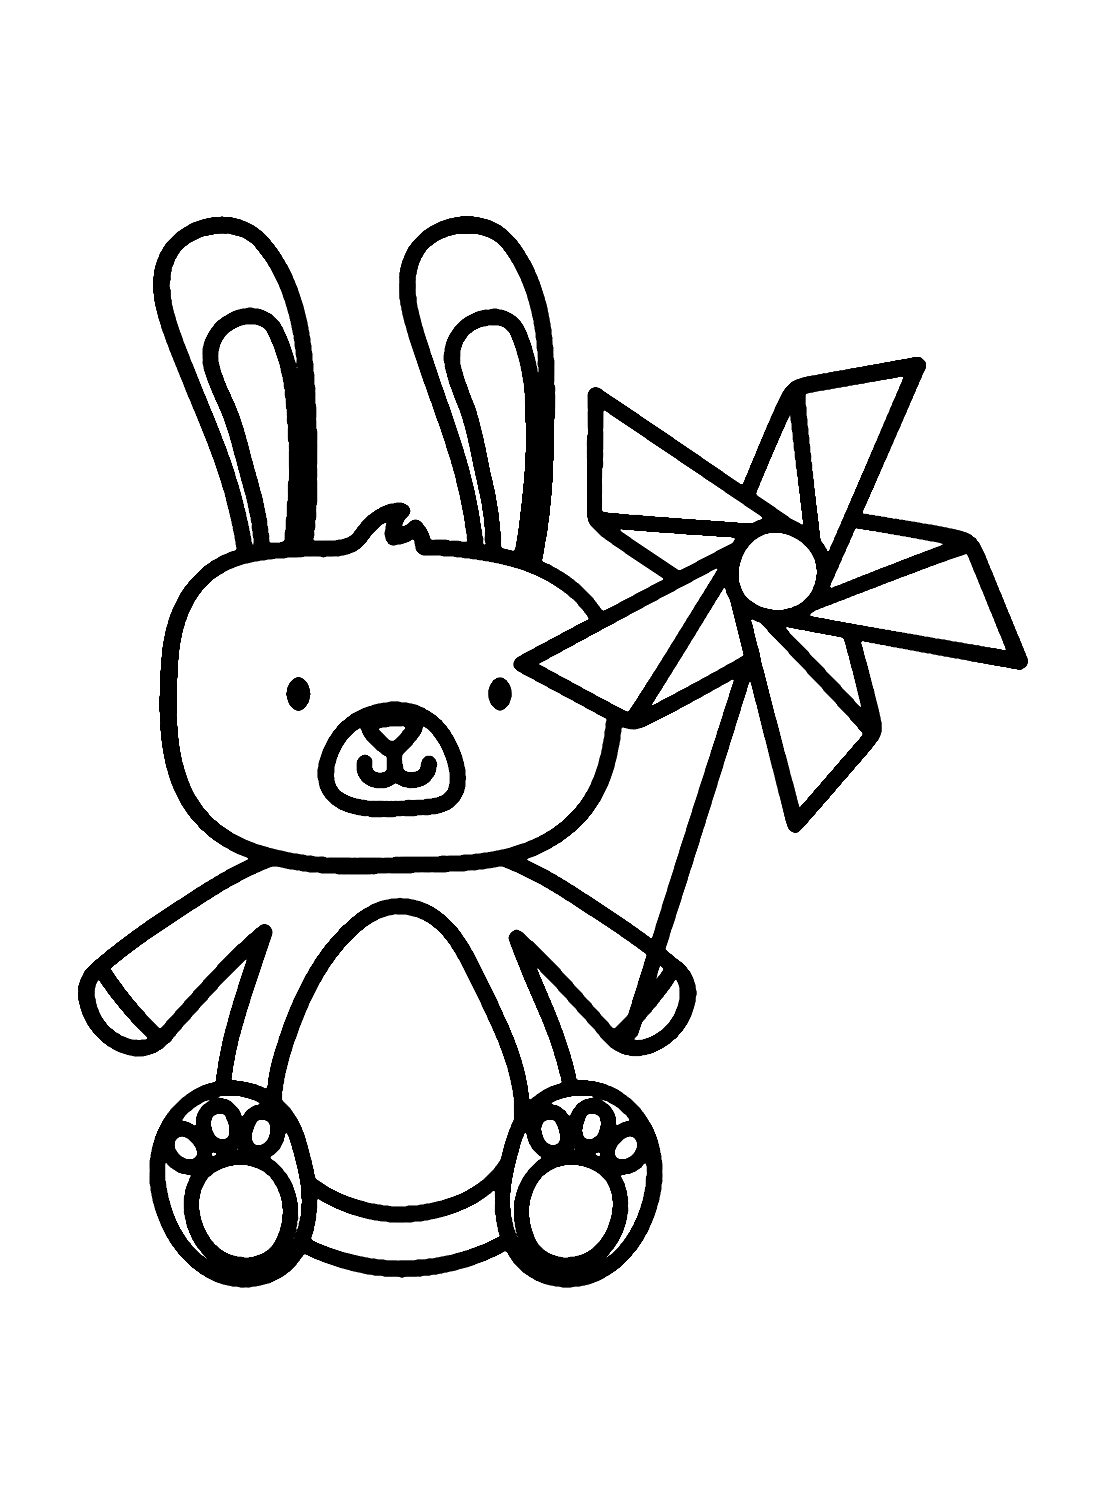 Rabbit with Pinwheel Toy from Pinwheel